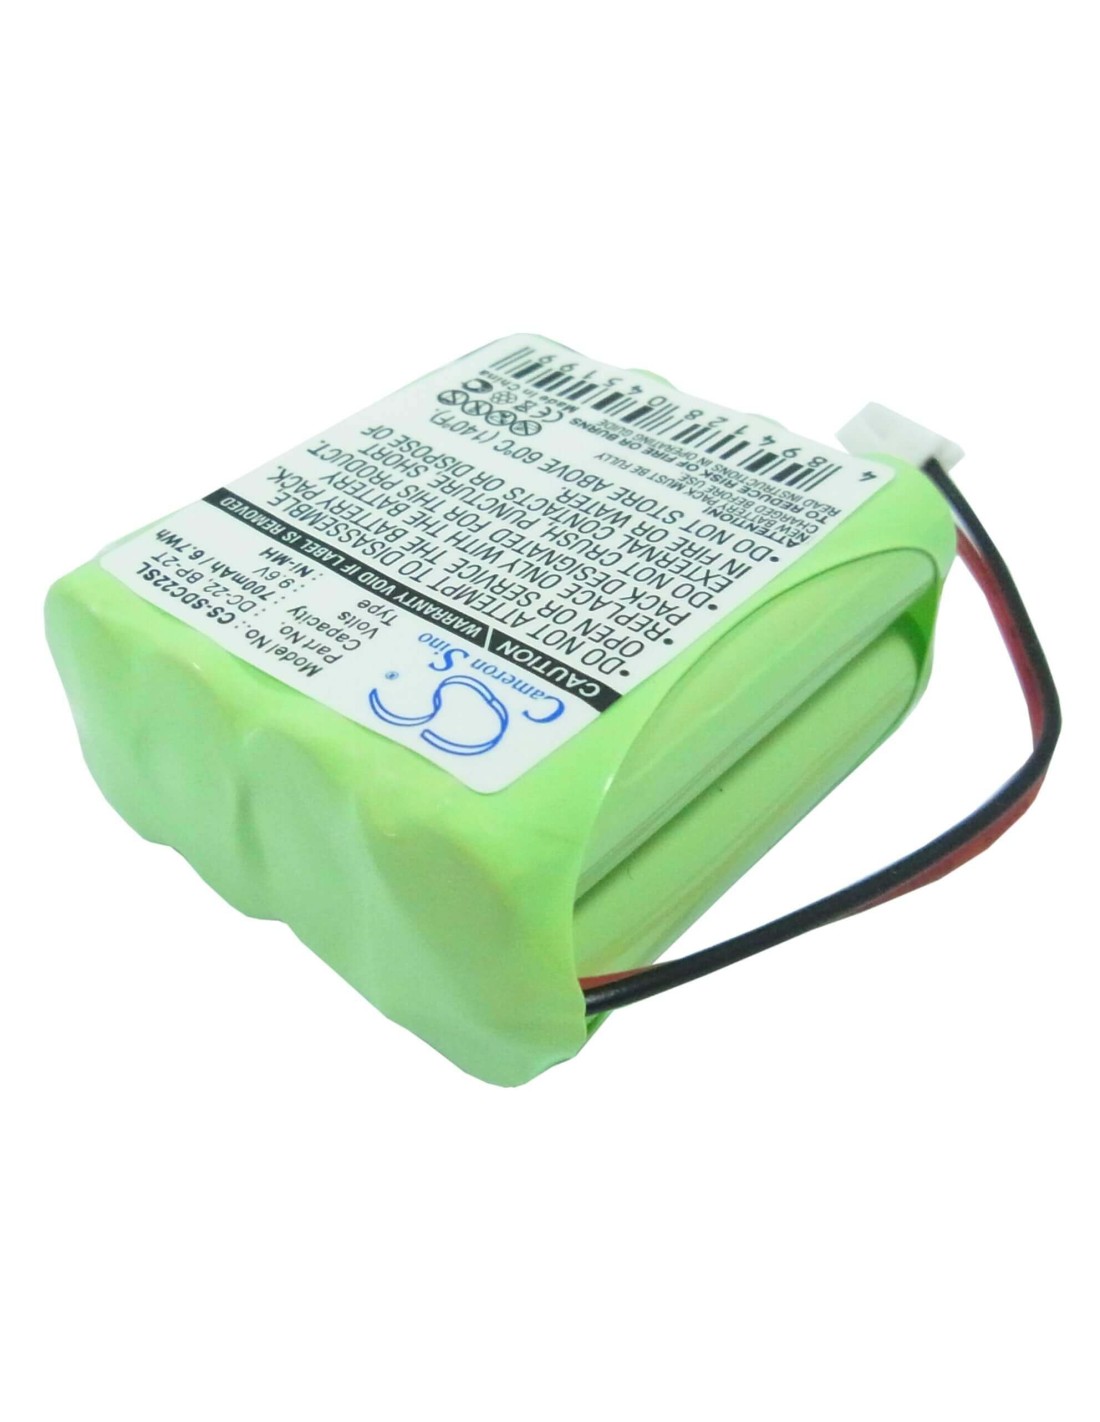 Battery for Sportdog Transmitter 1400, Transmitter 1400ncp, Transmitter 1500 9.6V, 700mAh - 6.72Wh